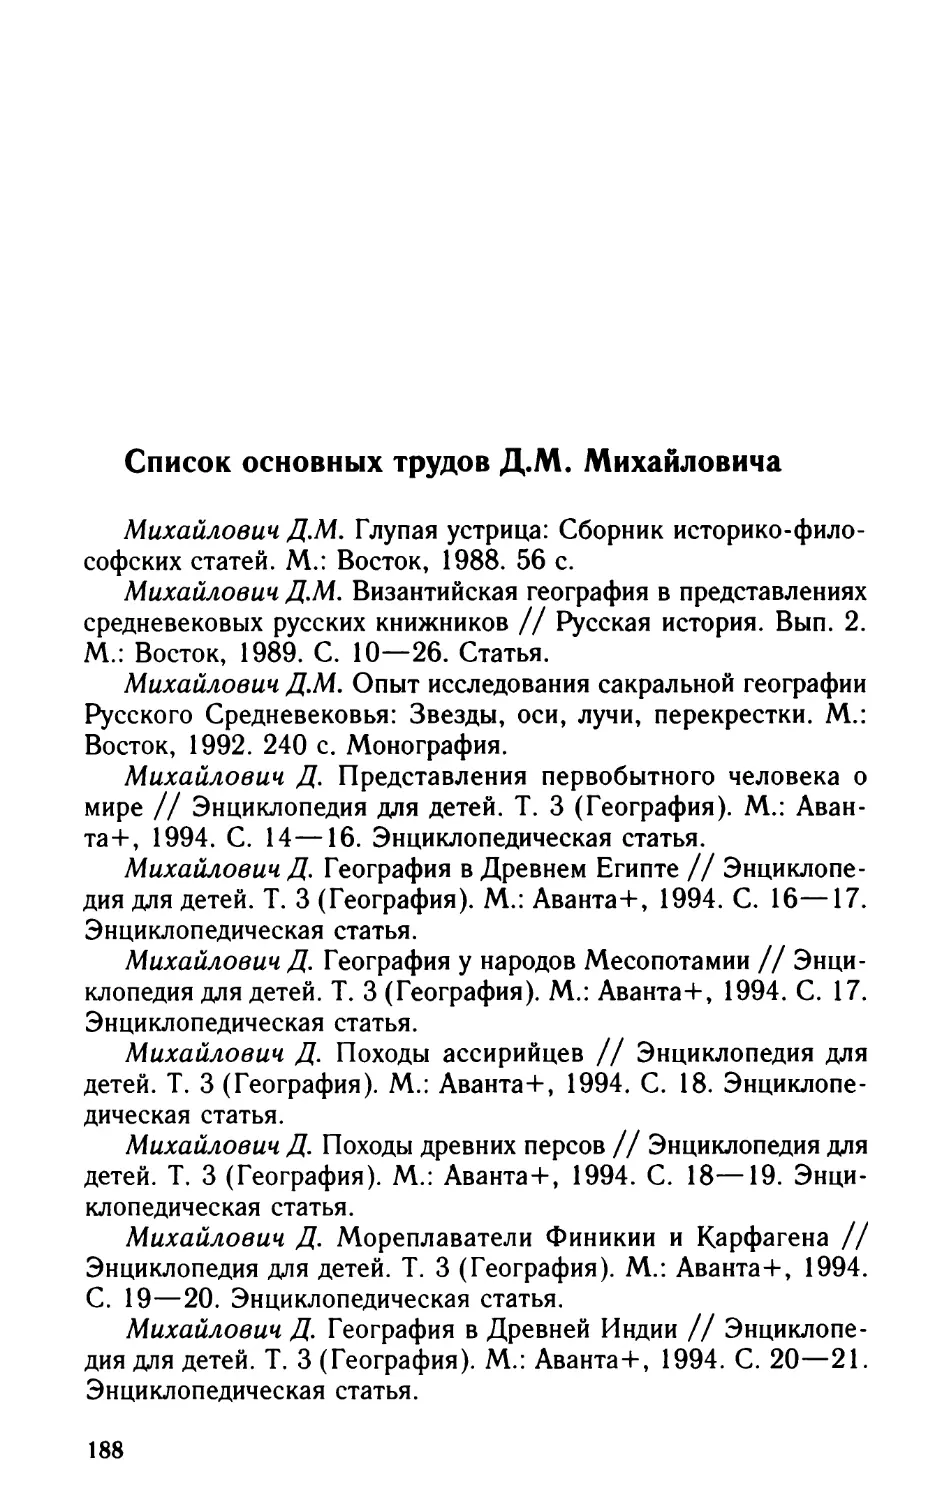 Список основных трудов Д.М. Михайловича